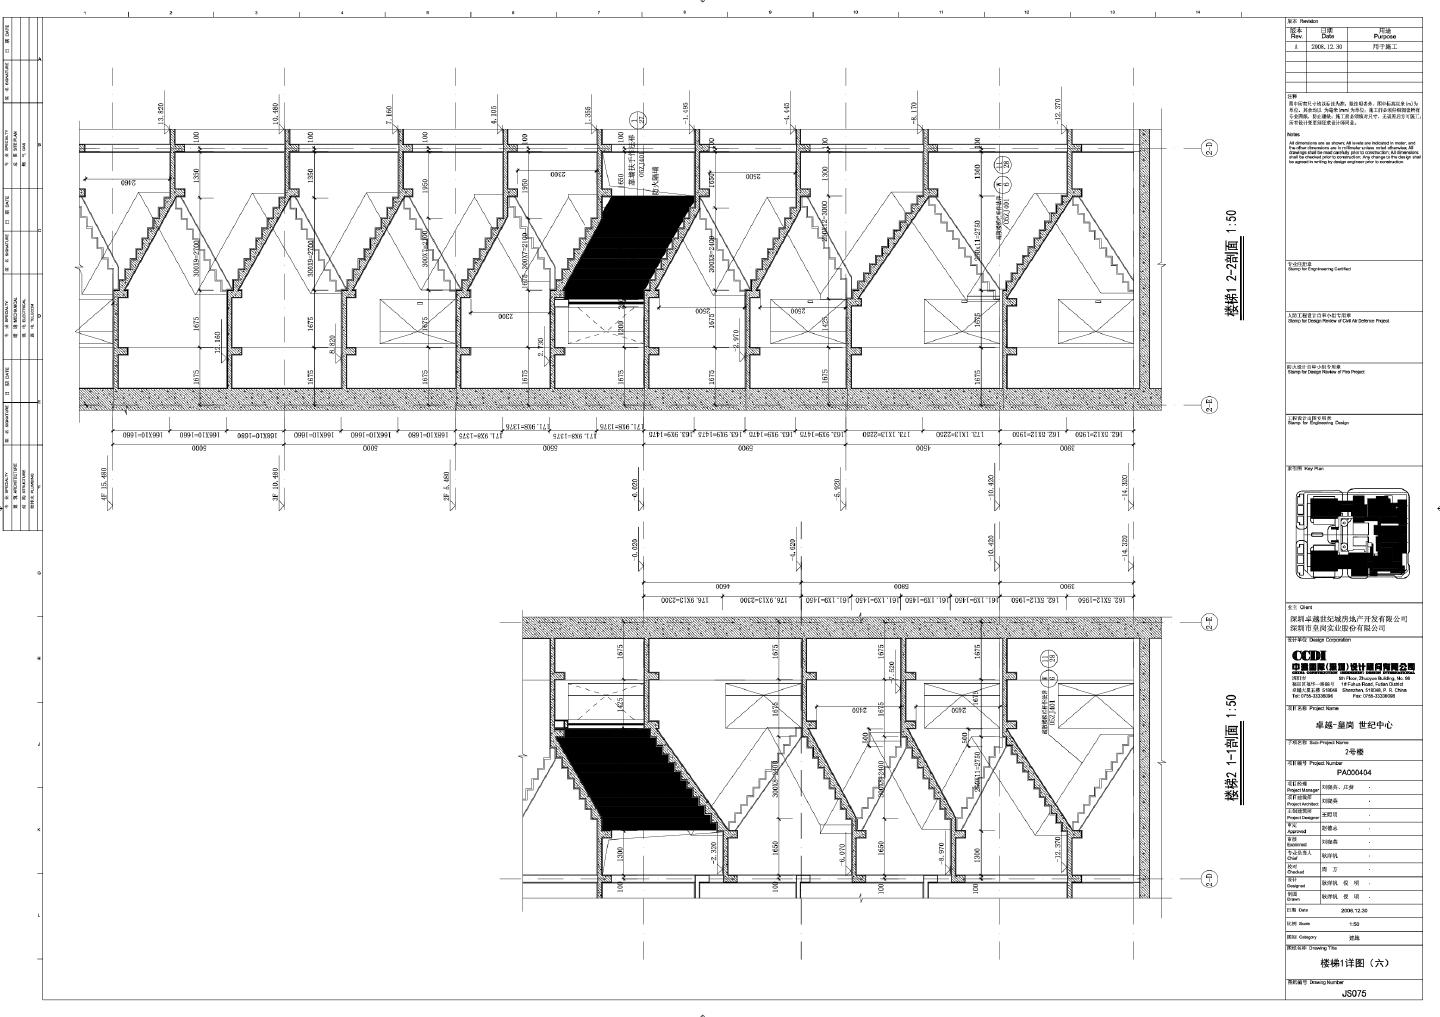 卓越·皇岗世纪中心2号楼建施075楼梯详图CAD图.DWG